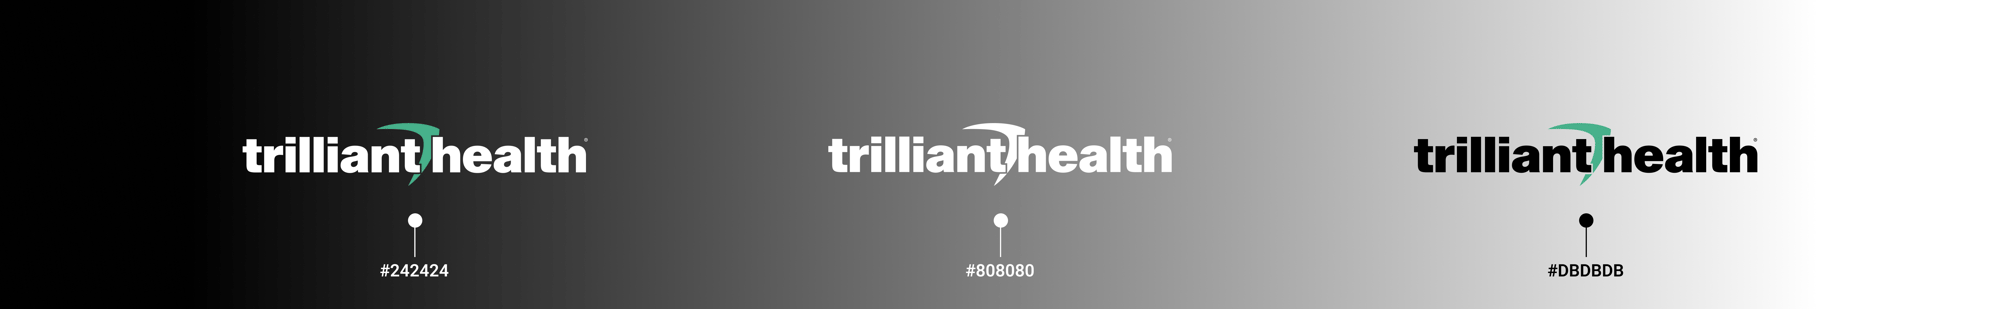 Trilliant Health Logo Color Scale